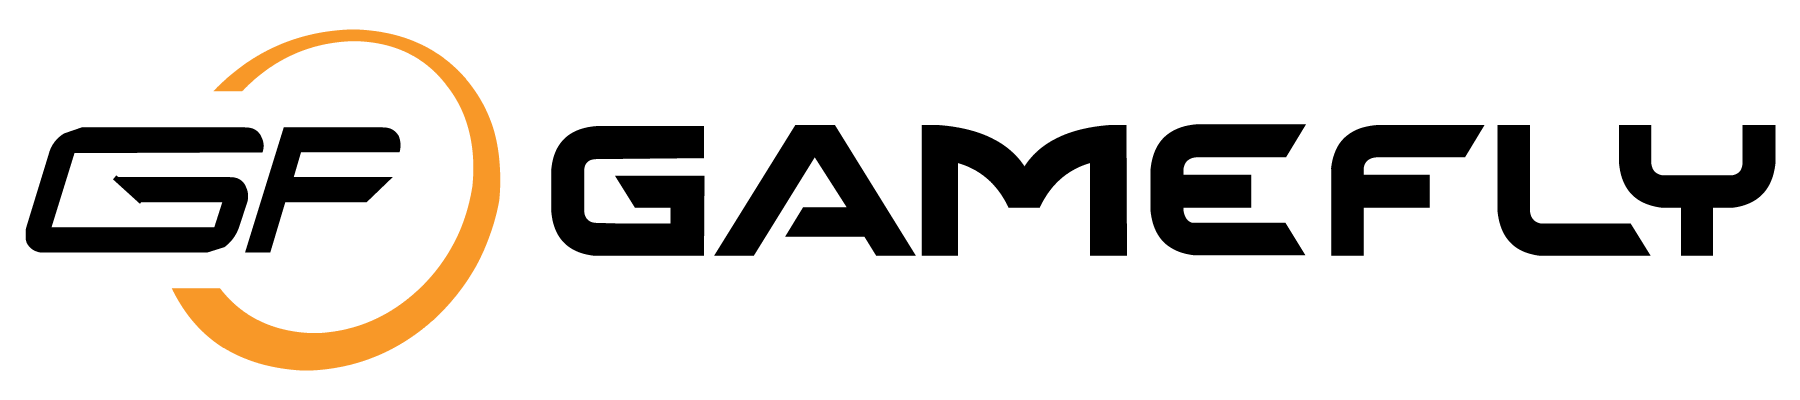 GAMEFLY Logo photo - 1